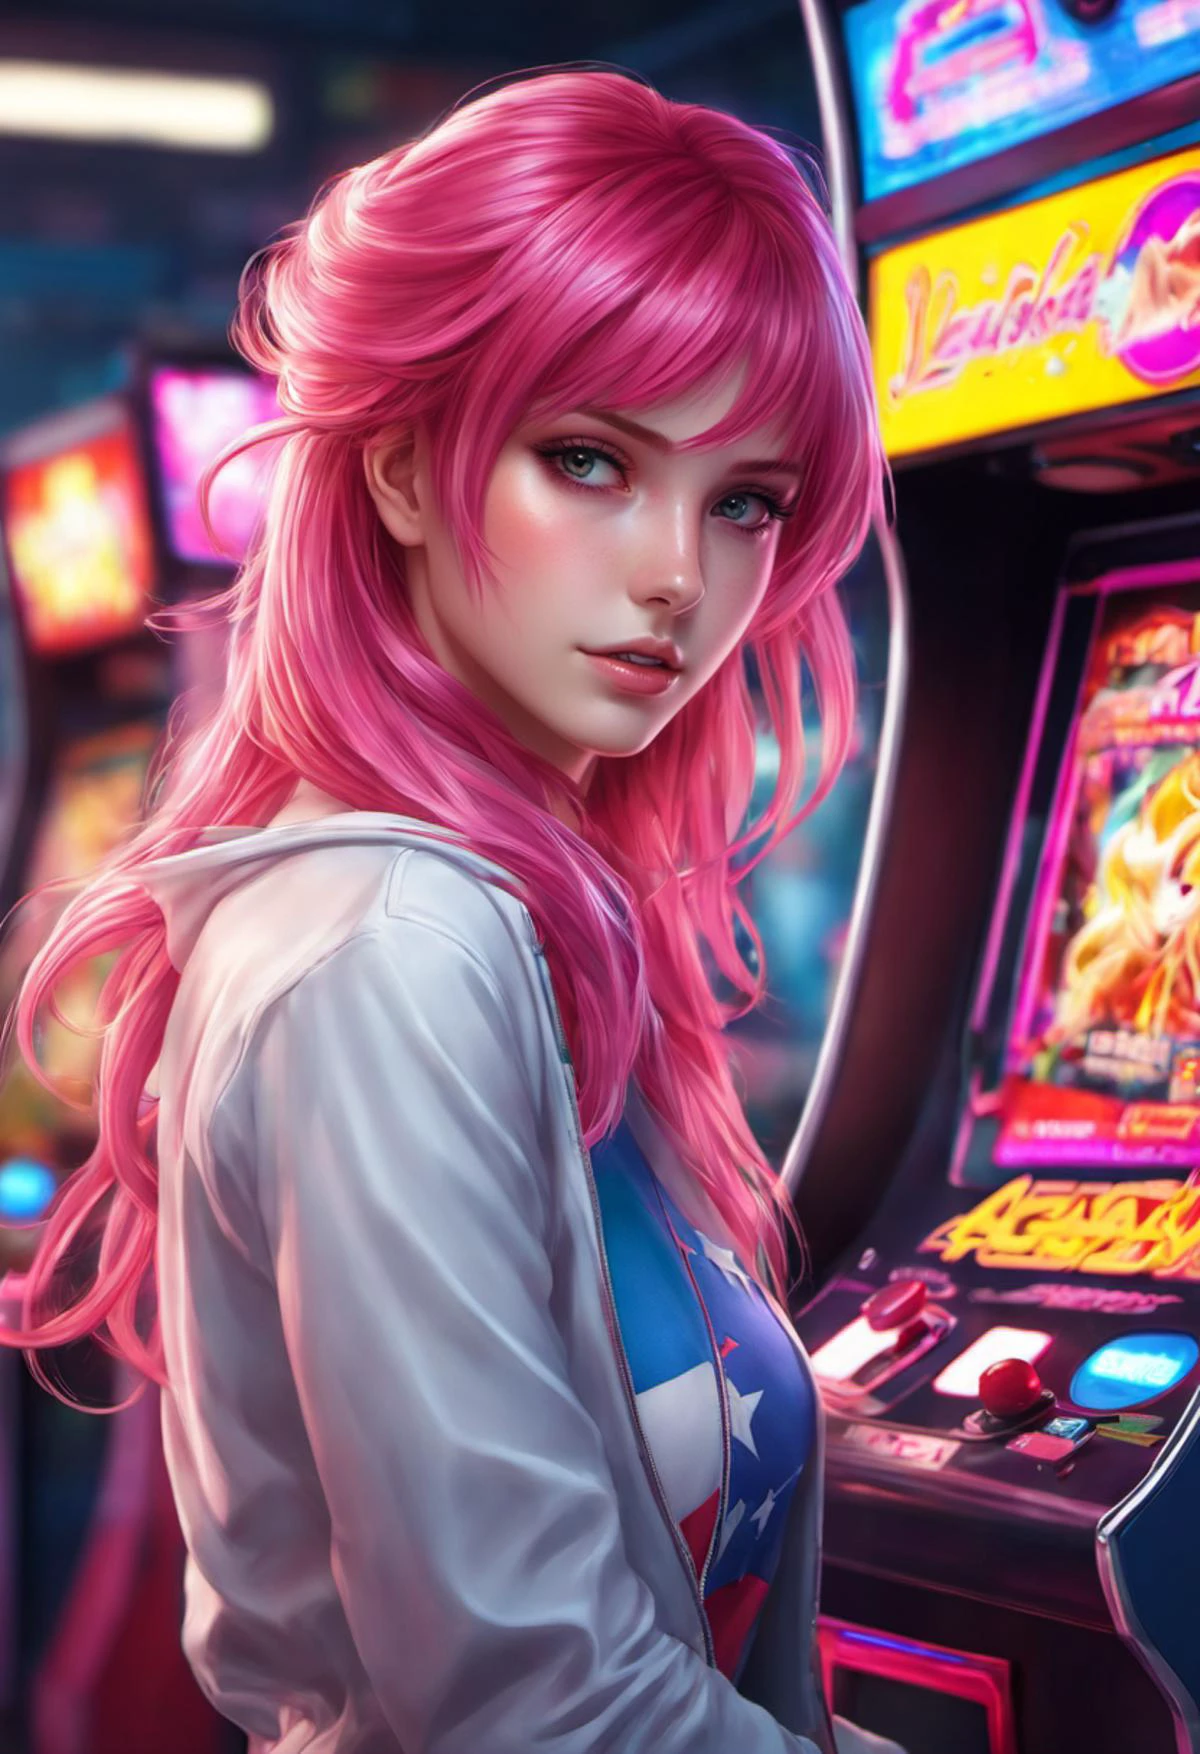 游戏厅里的粉色头发的 Asuka LangleySoryu, artgerm 制作的精美动漫艺术, ((8千)) 